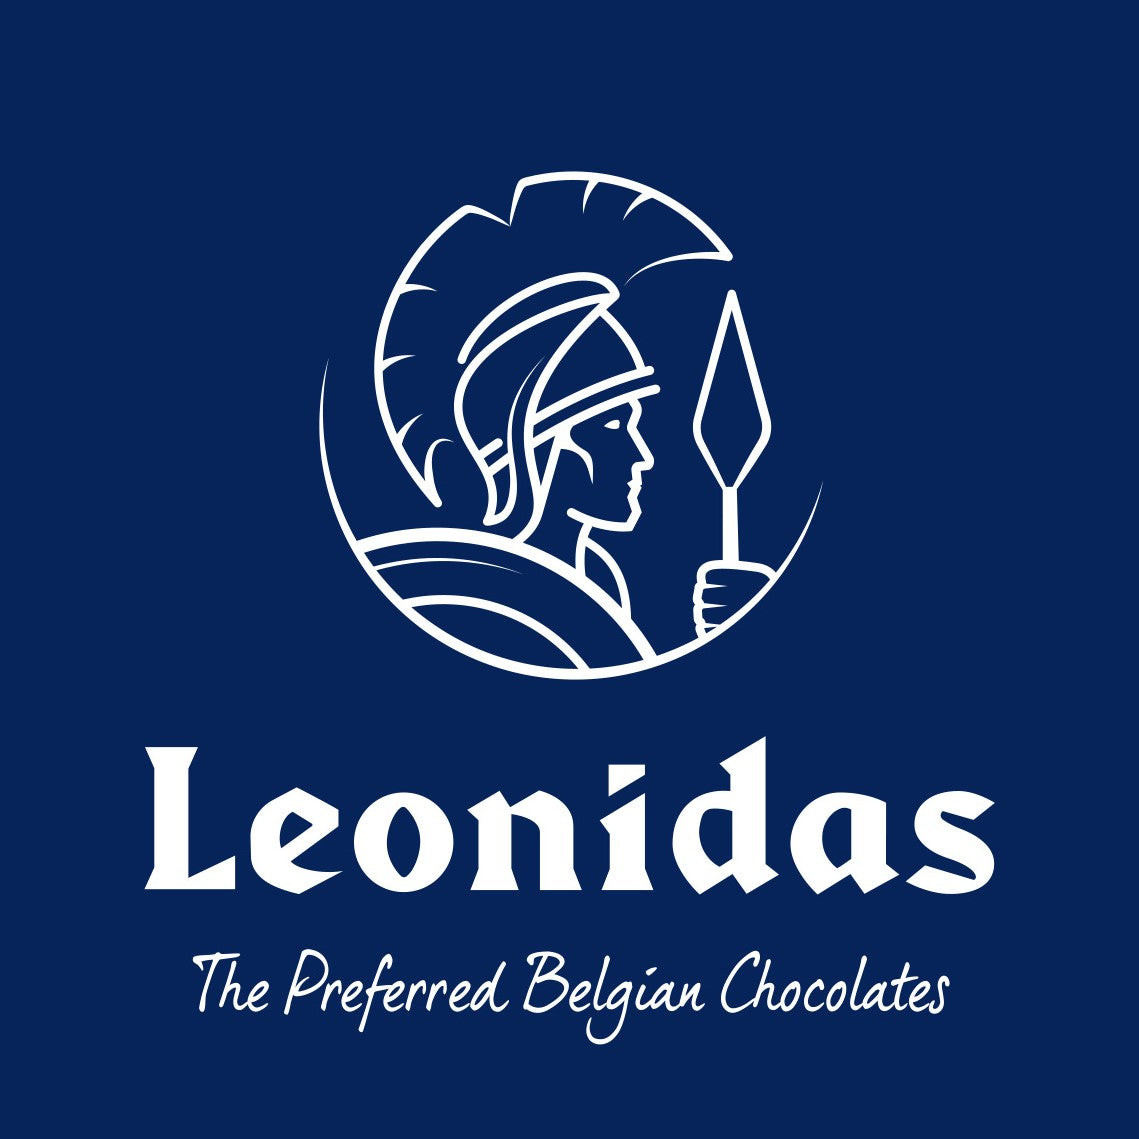 Leonidas Online Ireland